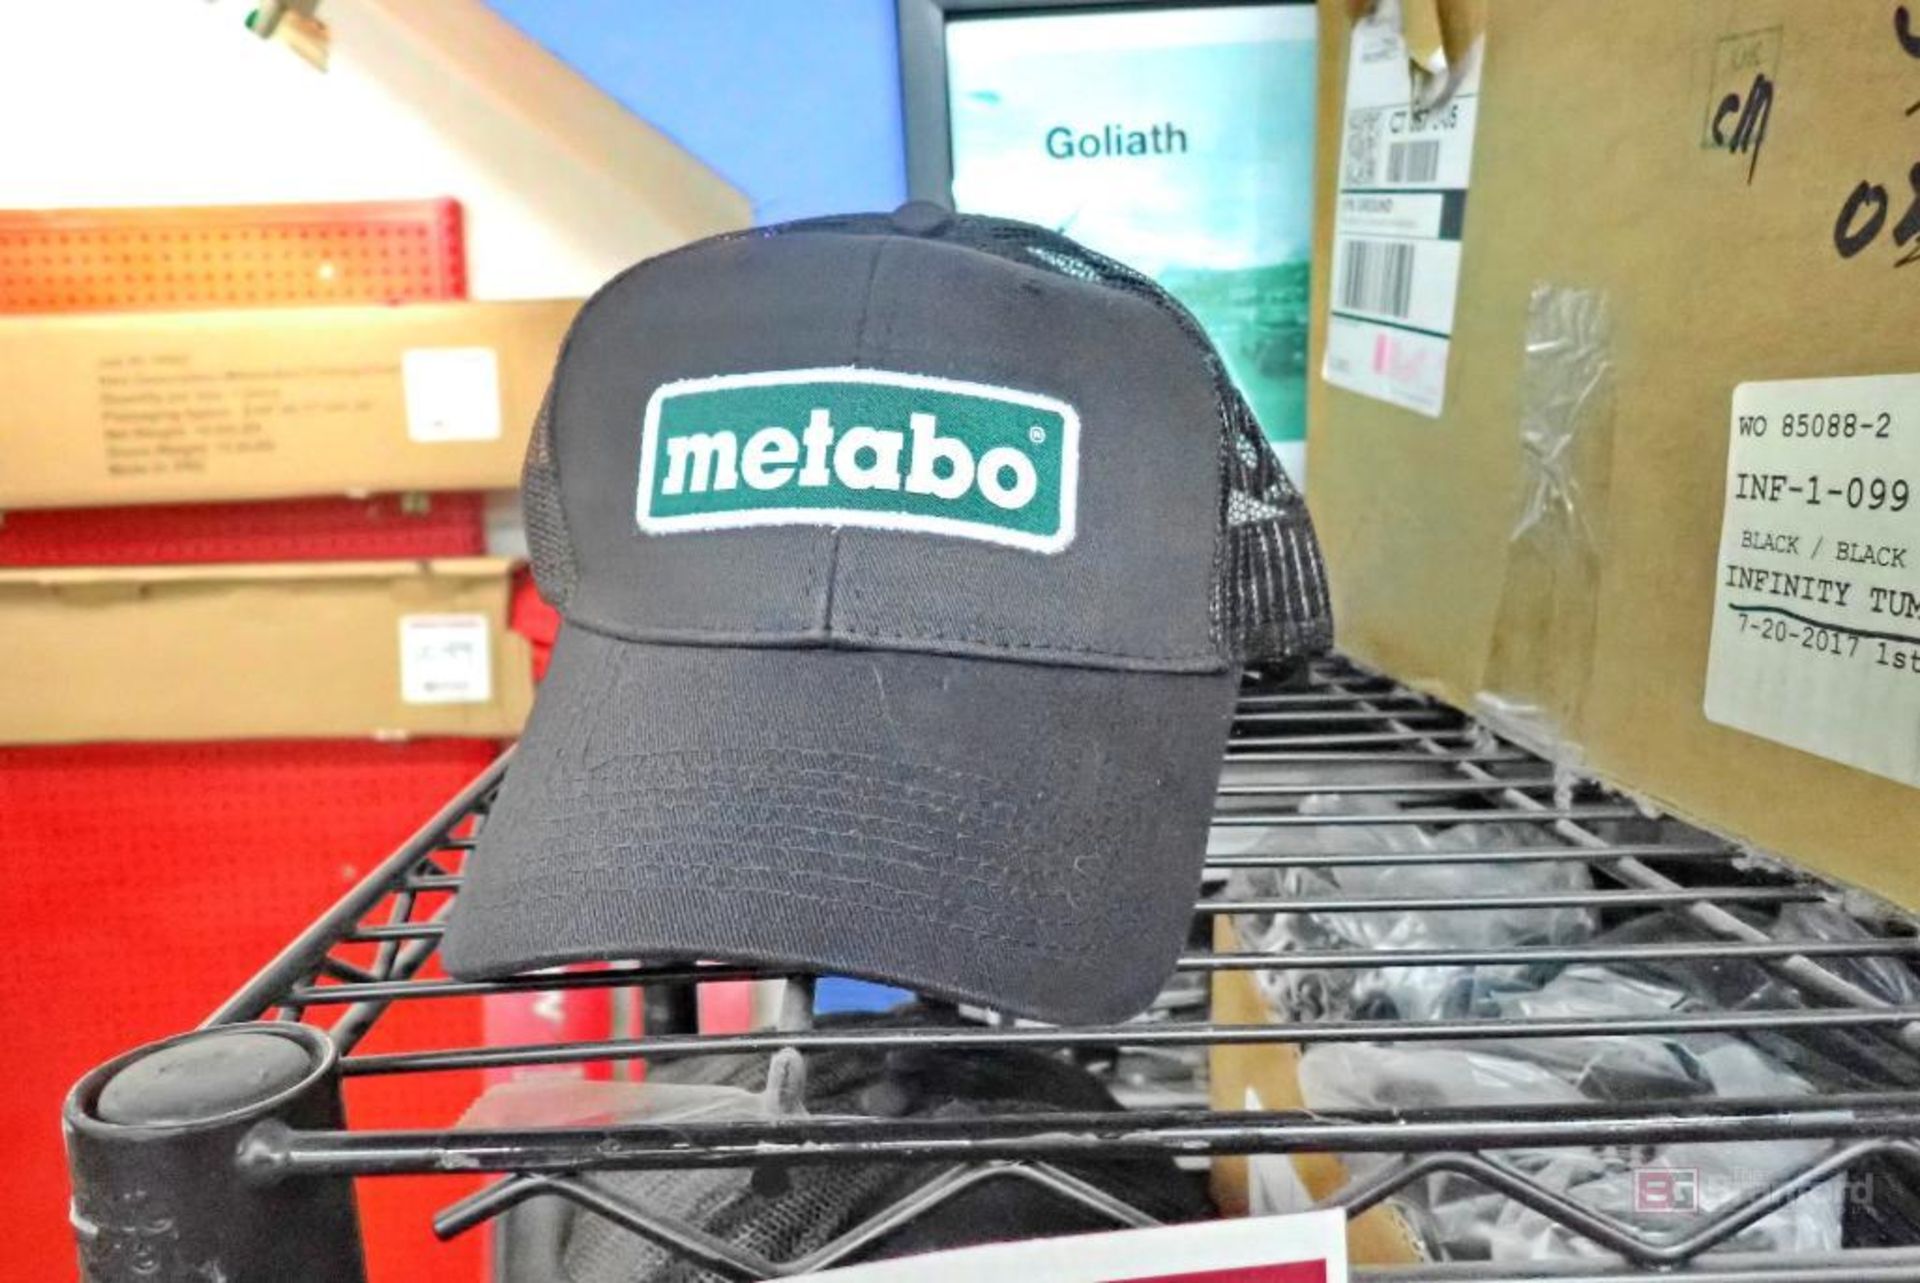 Metabo Hats, Makita Coffee Mugs & Safety Glasses - Image 2 of 8